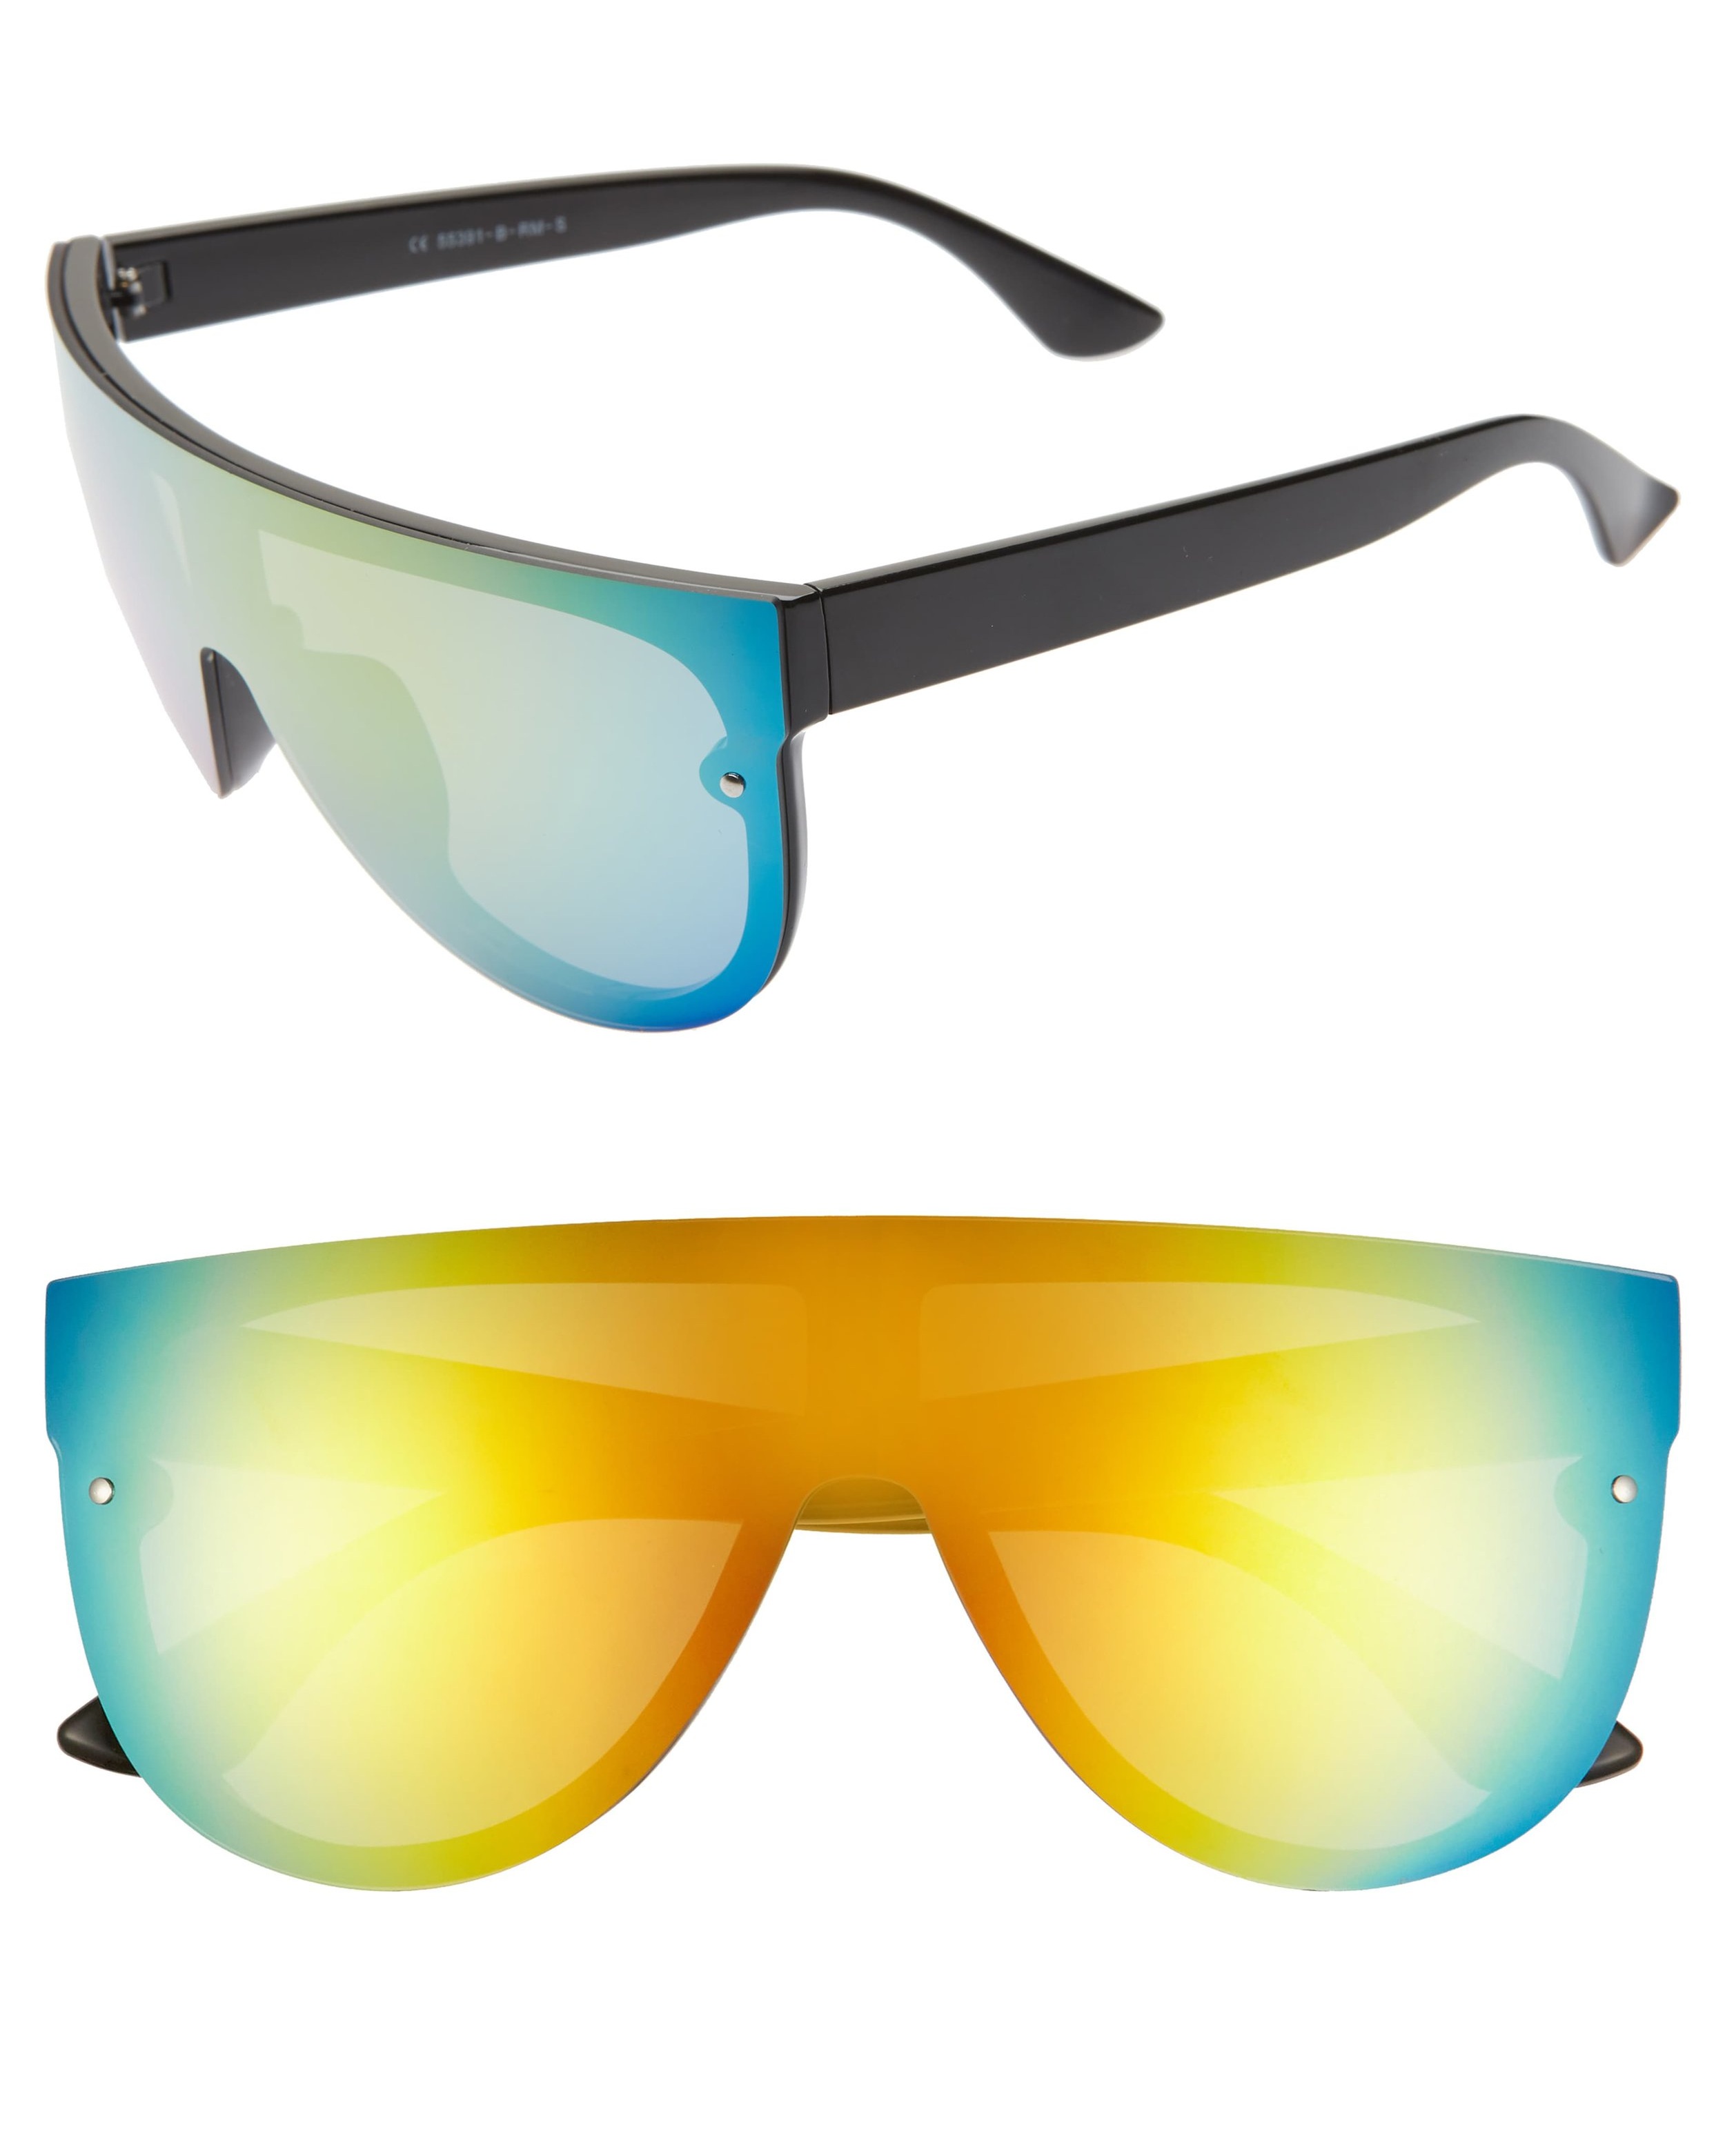 Glance Mirrored Shield Sunglasses, Main, color, BLACK/ MULTI 154mm Tinted Mirrored Shield Sunglasses, $16